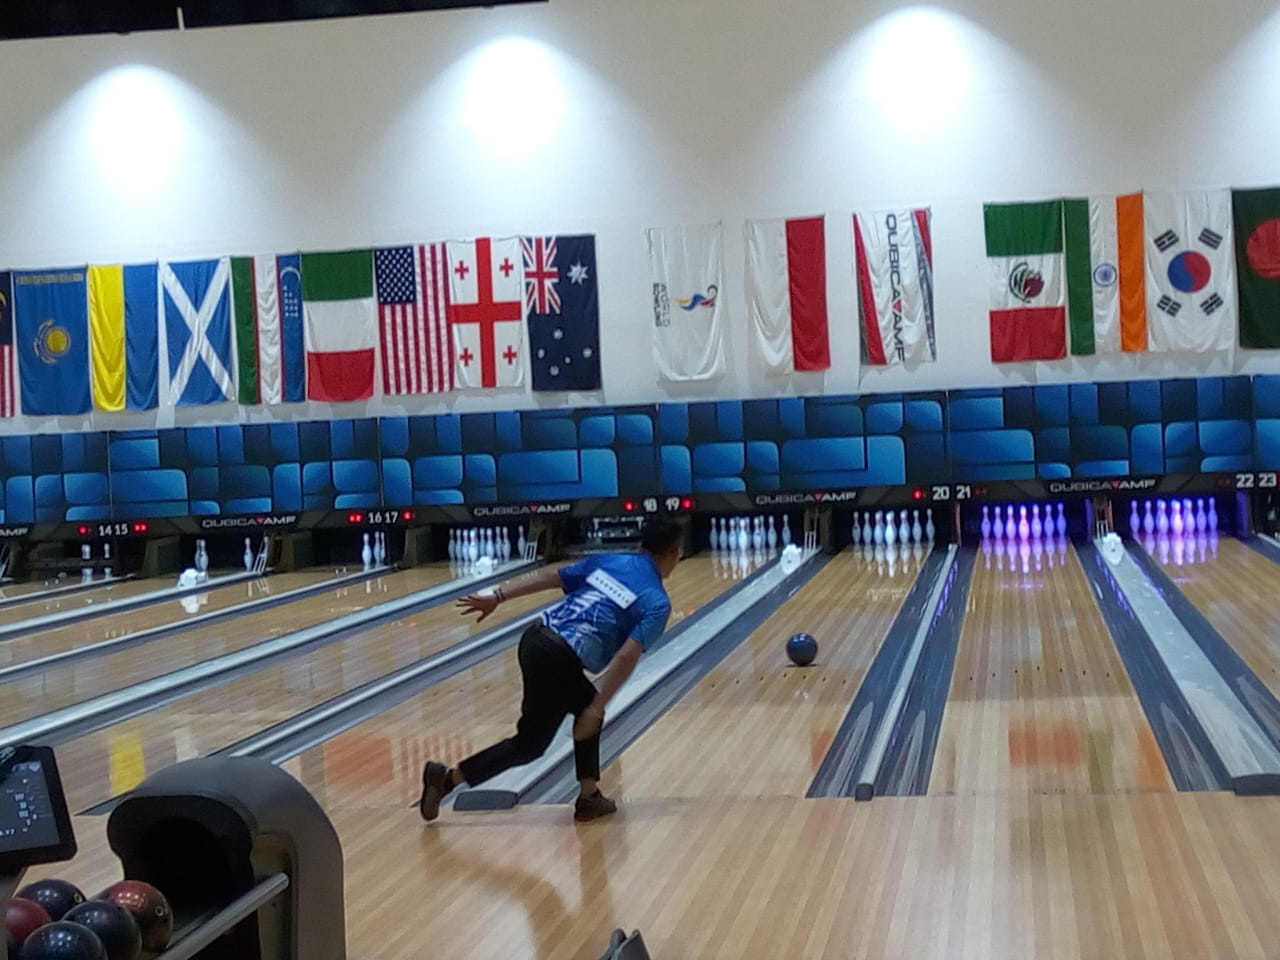 Ryan Lalisang Lolos Ke Babak 8 Besar 55th QubicaAMF World Bowling